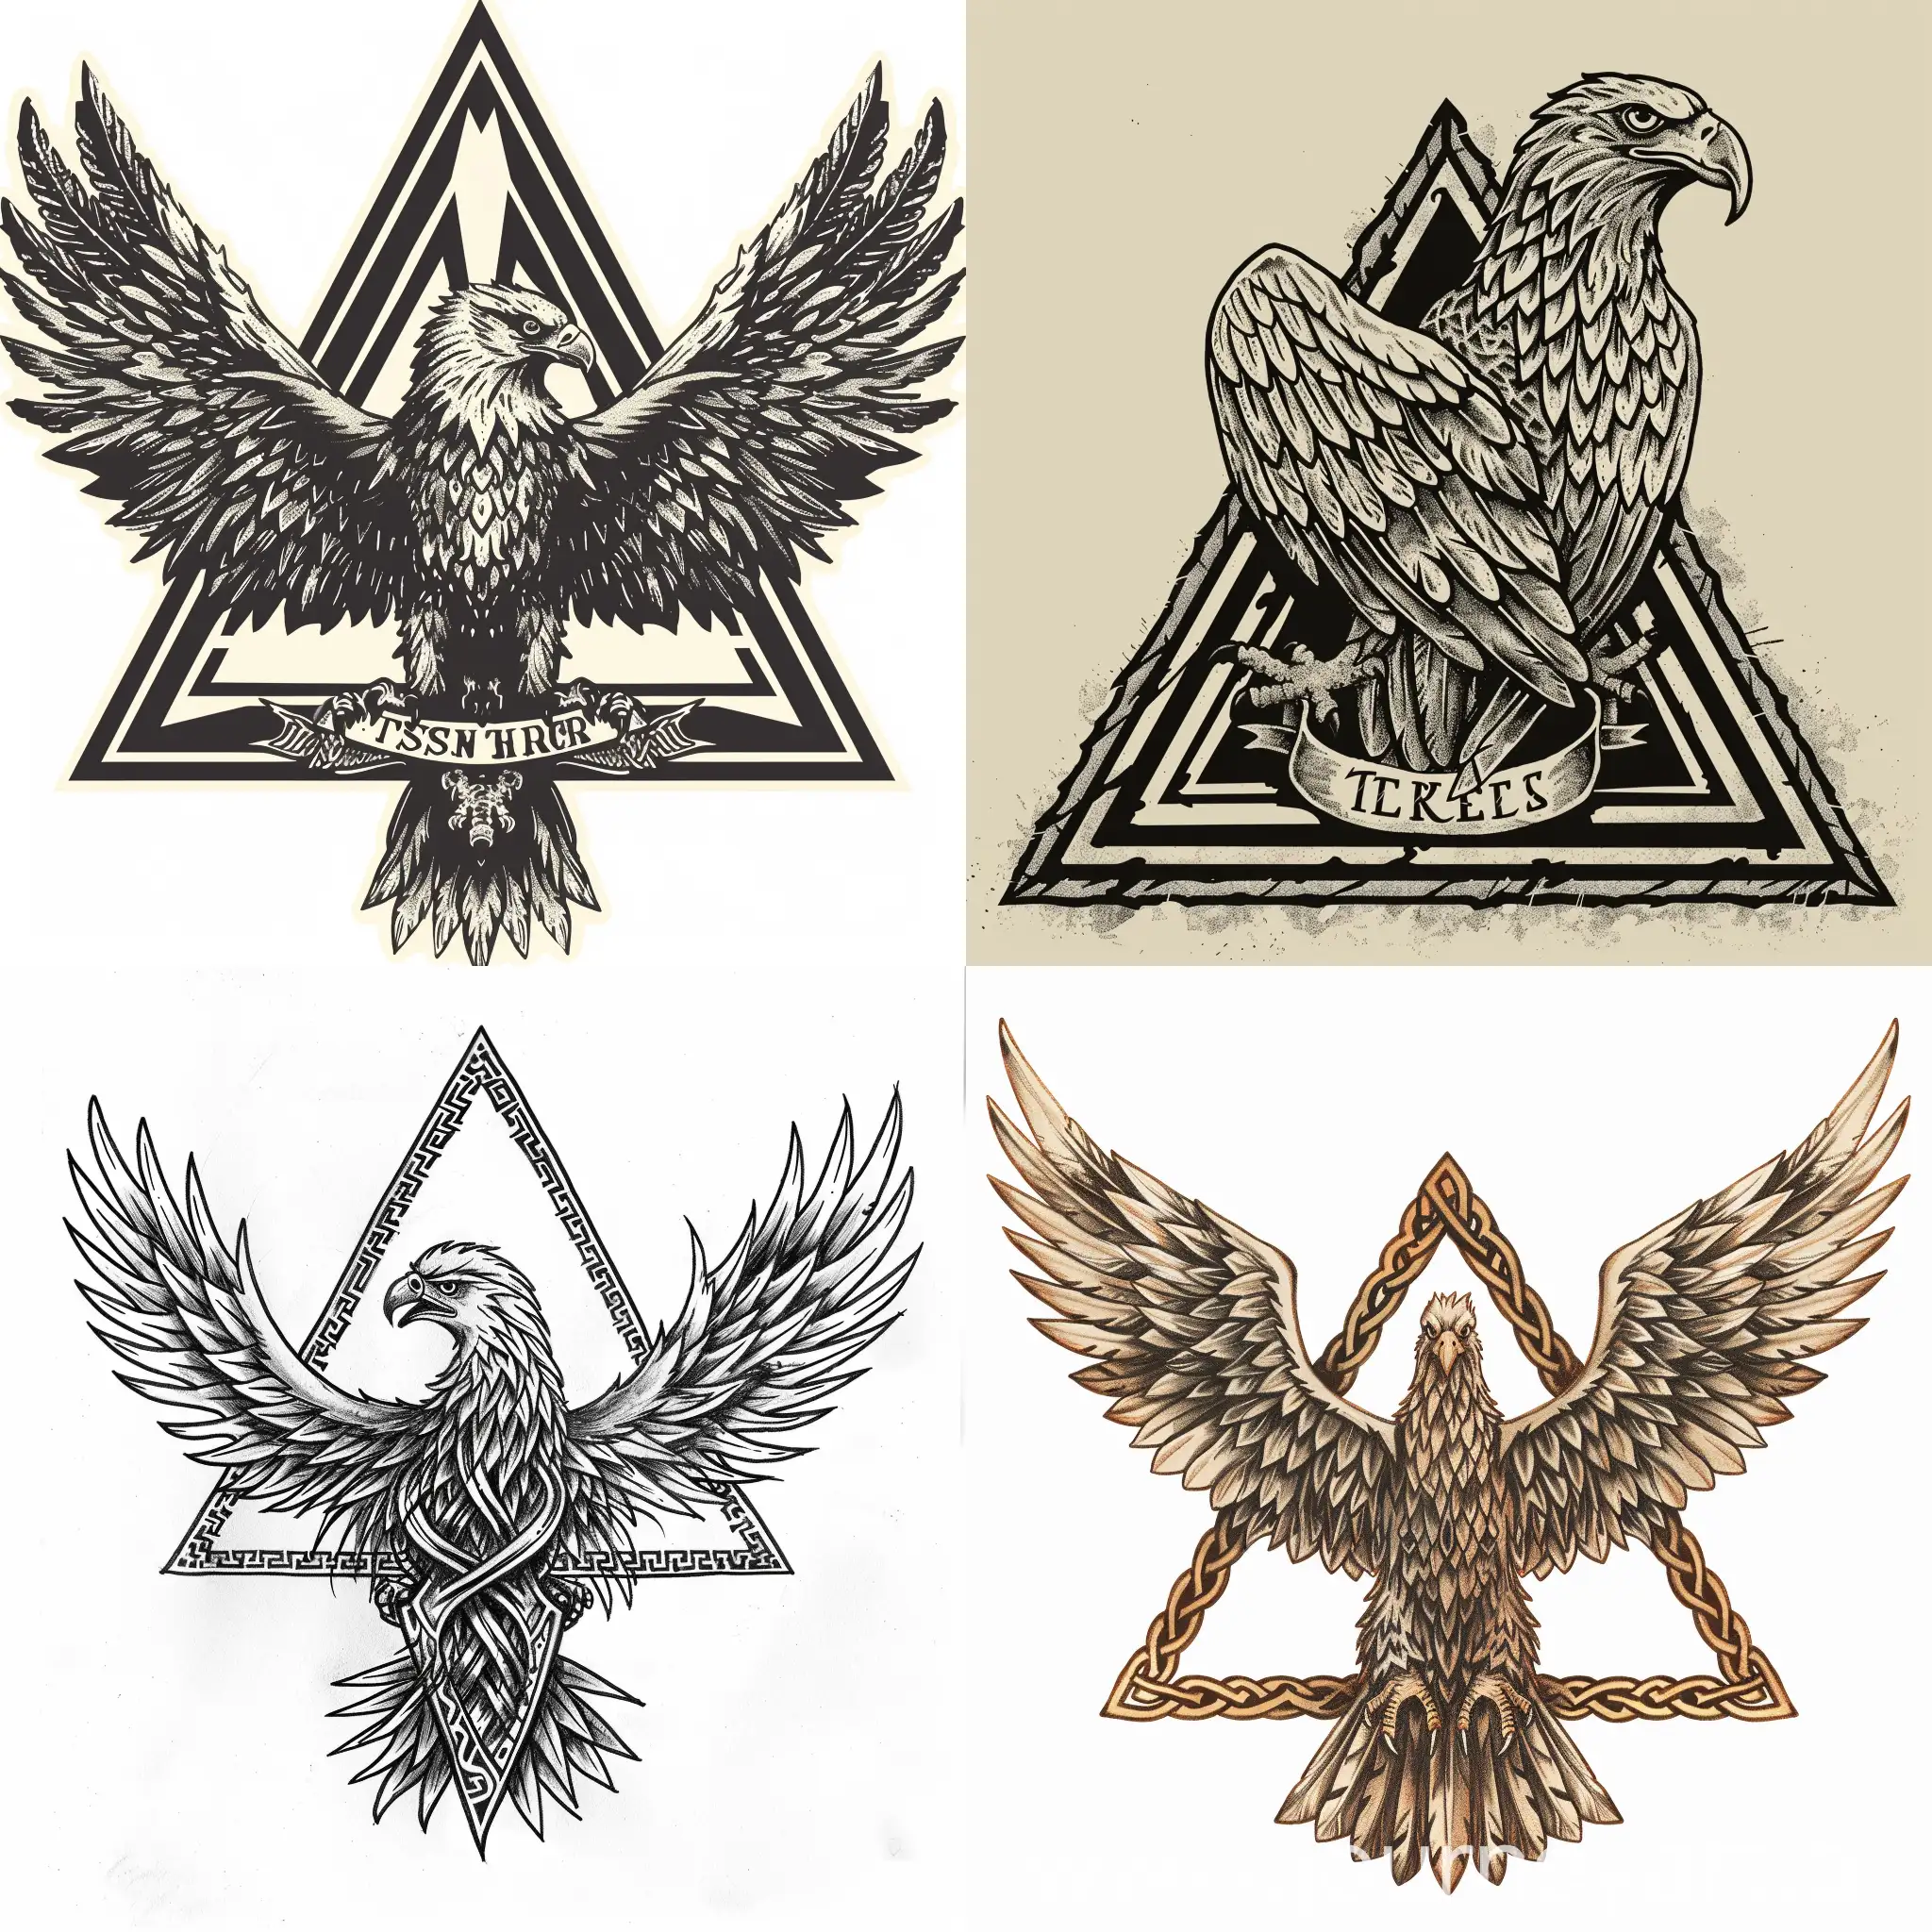 Нарисуй орла в плоском дизайне типо герба в треугольнике сделаные из 3 тере 